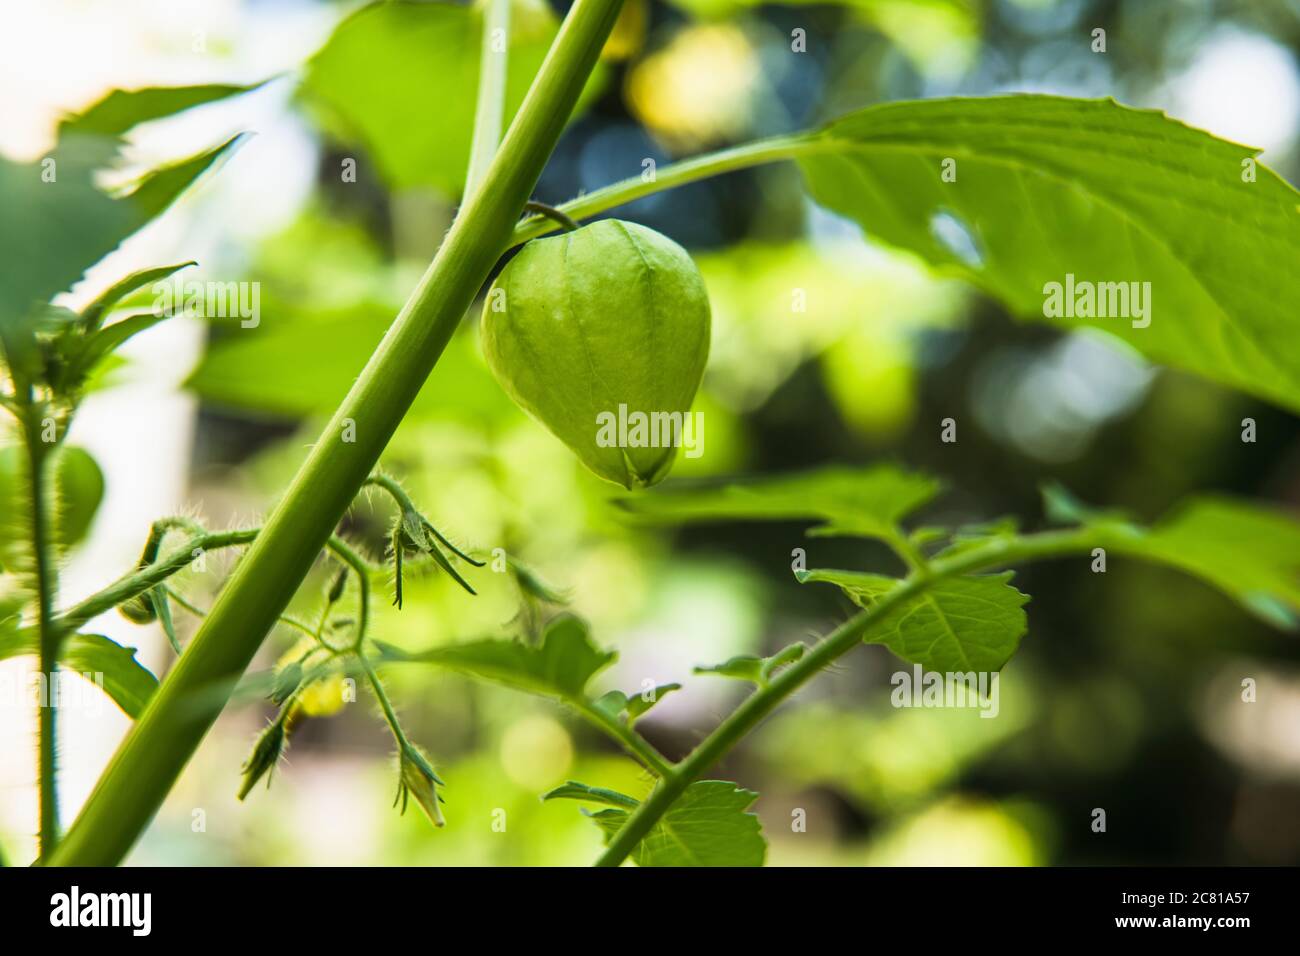 Closeup Tomatillo on the vine in a home garden Stock Photo